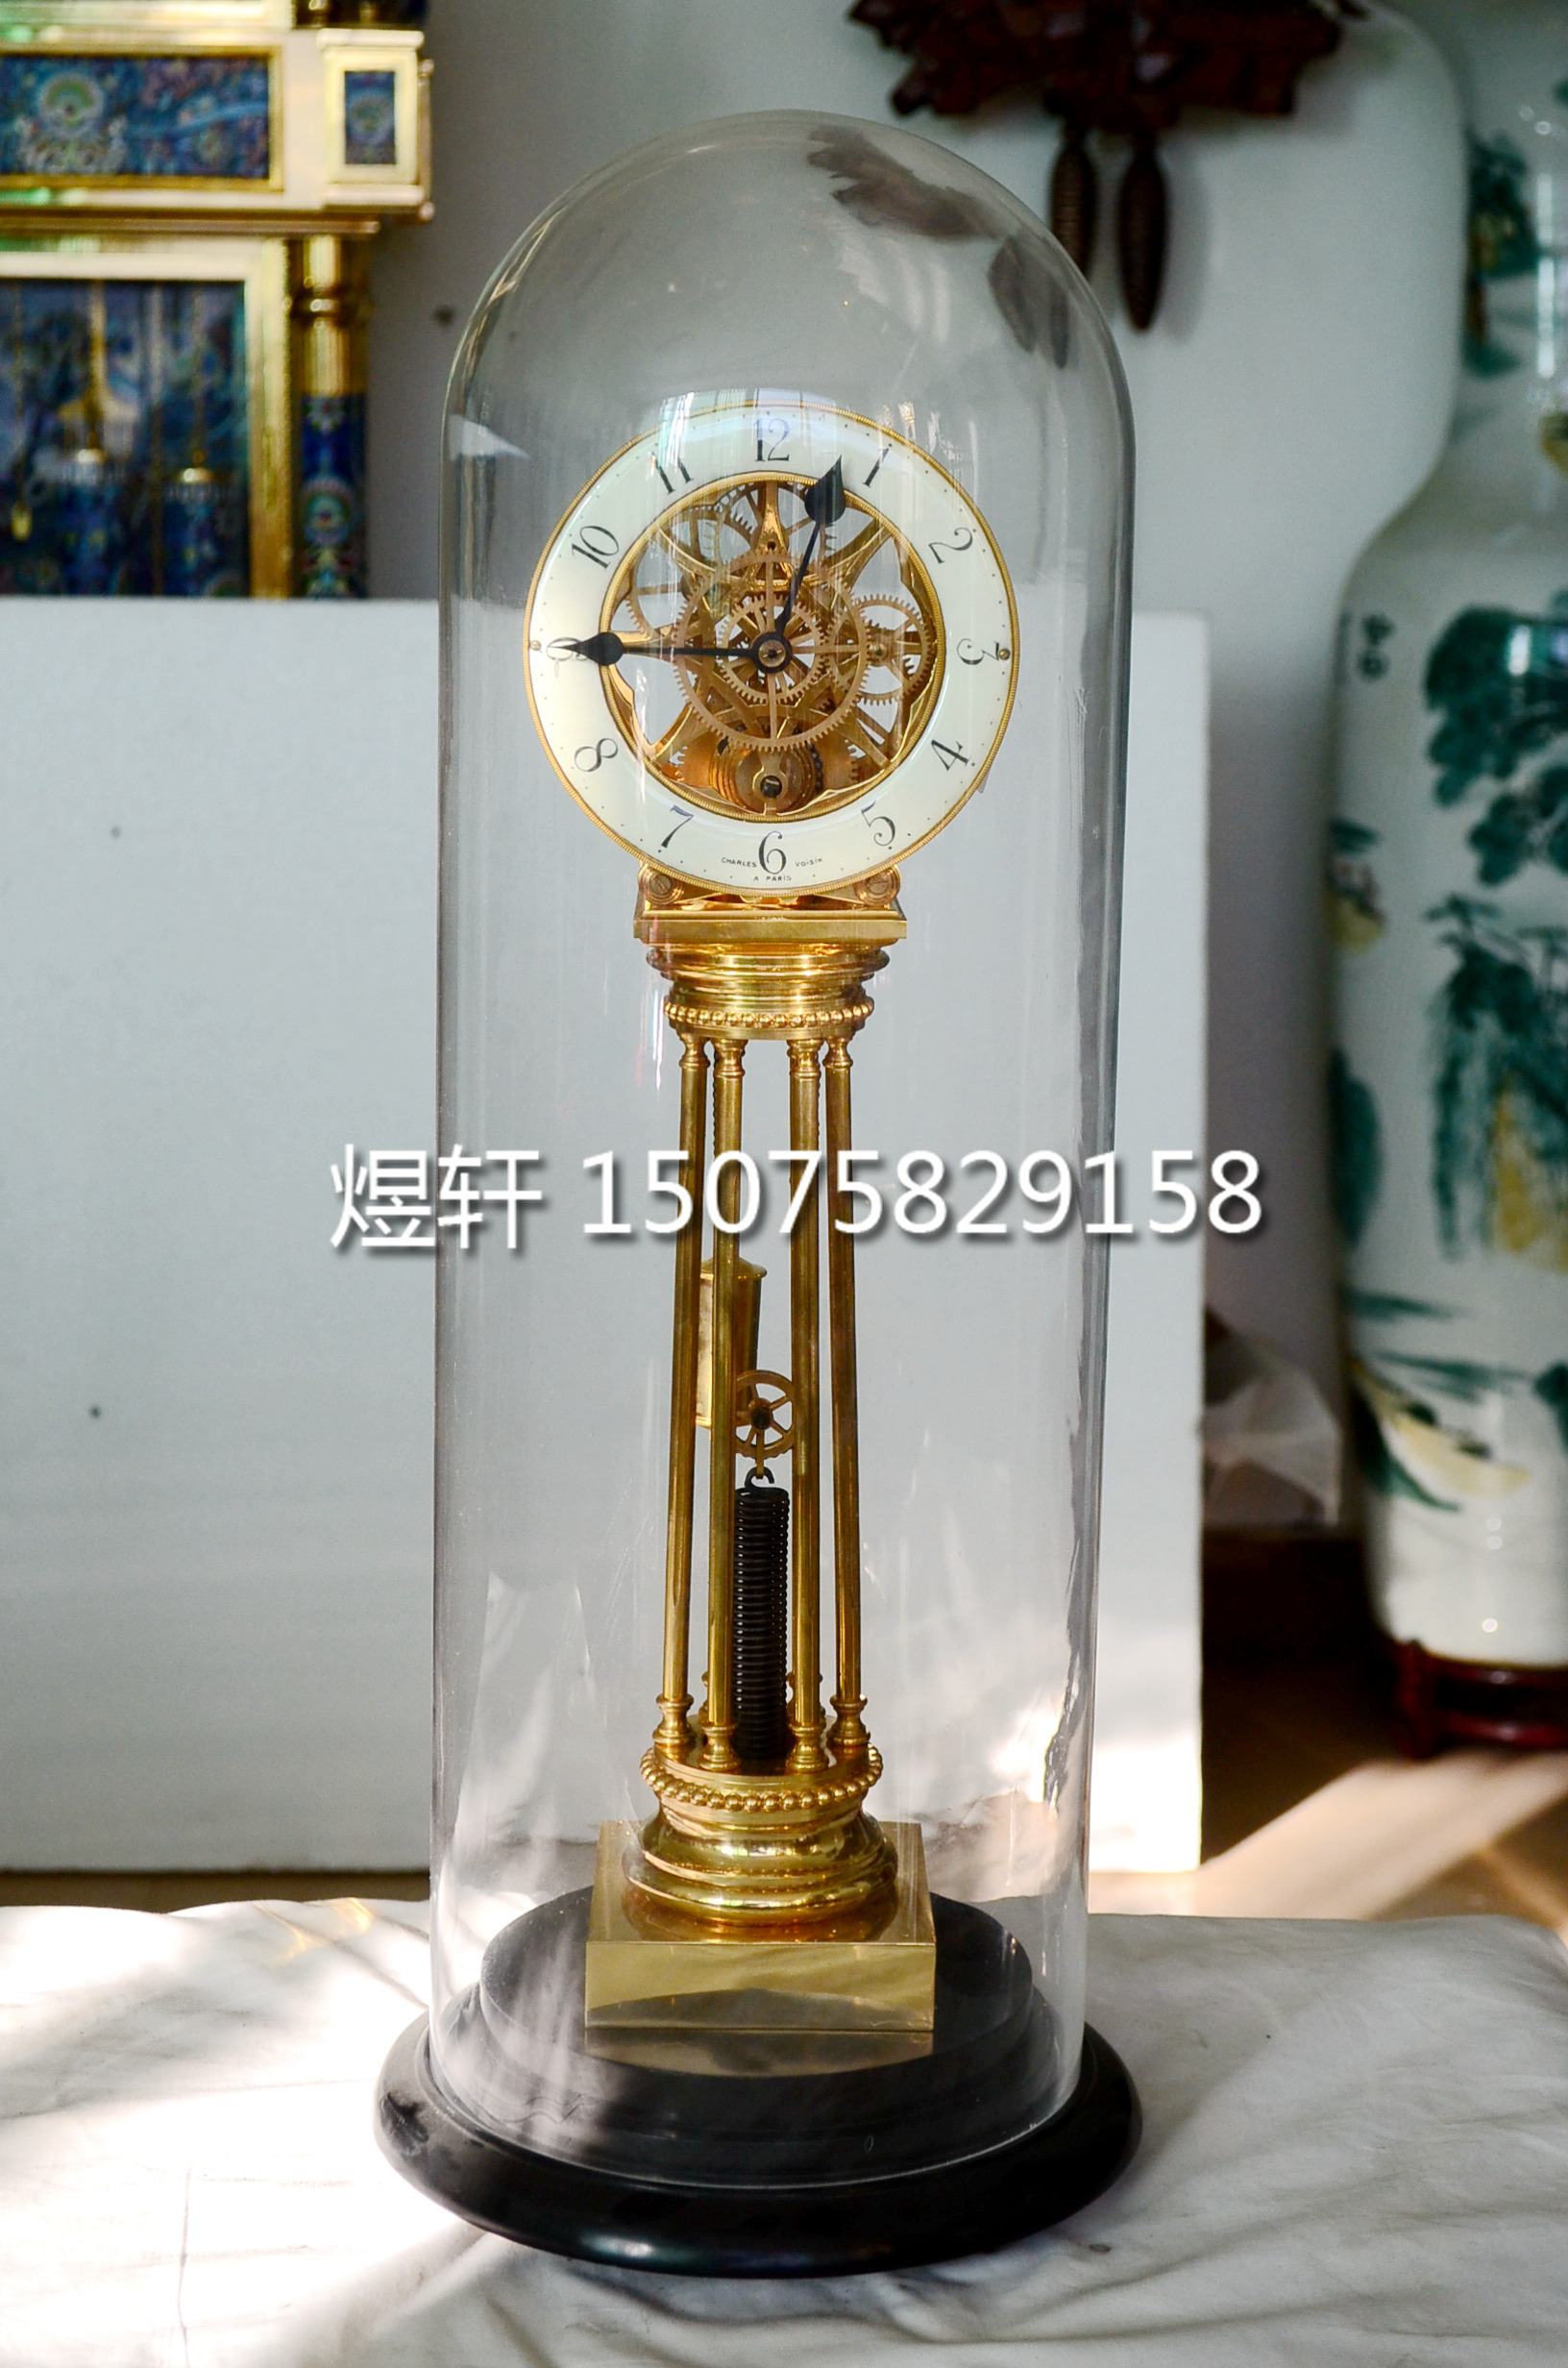 钟表拉簧仿古机械玻璃罩仿古董故宫法国台钟家居创意摆钟煜轩钟表